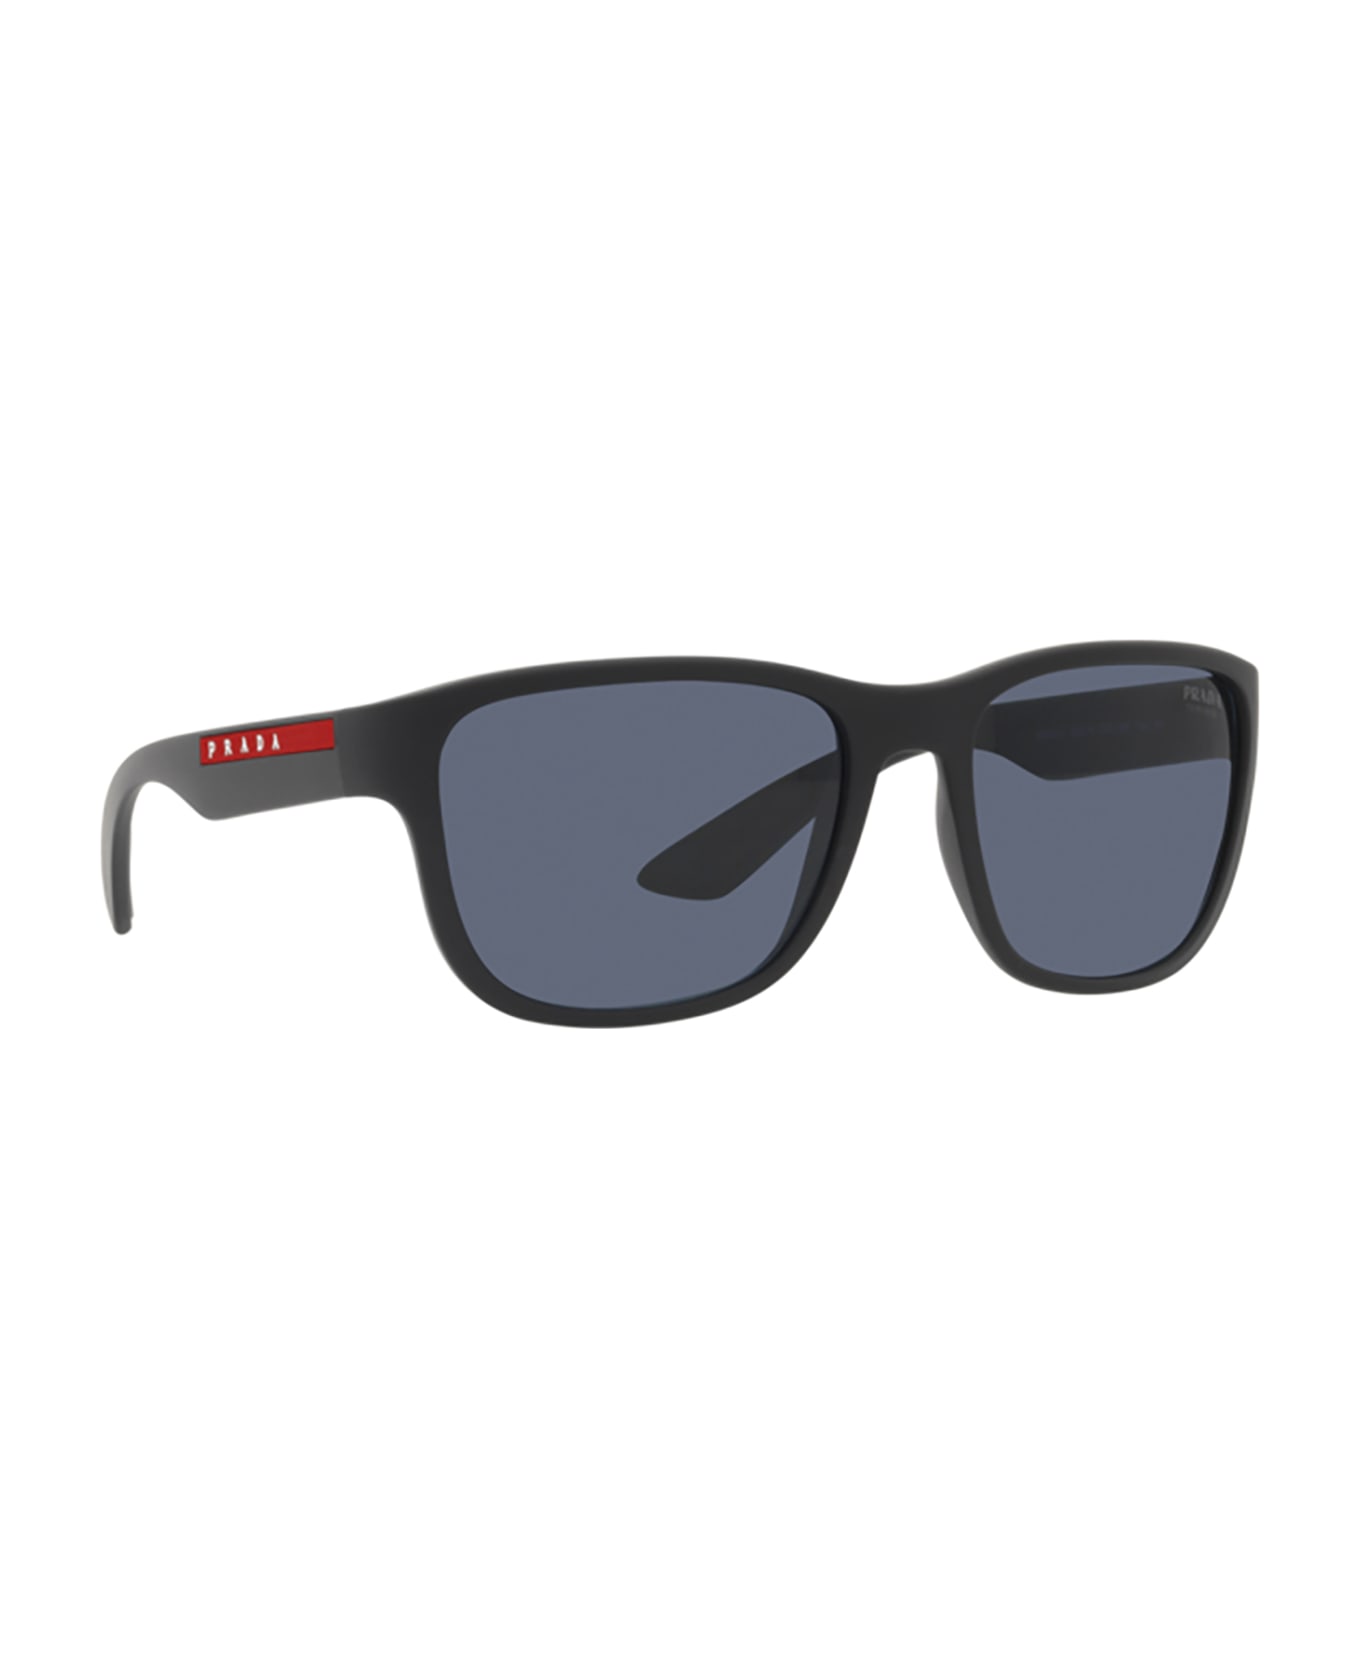 Prada Linea Rossa Ps 01us Rubber Black Sunglasses - Rubber Black